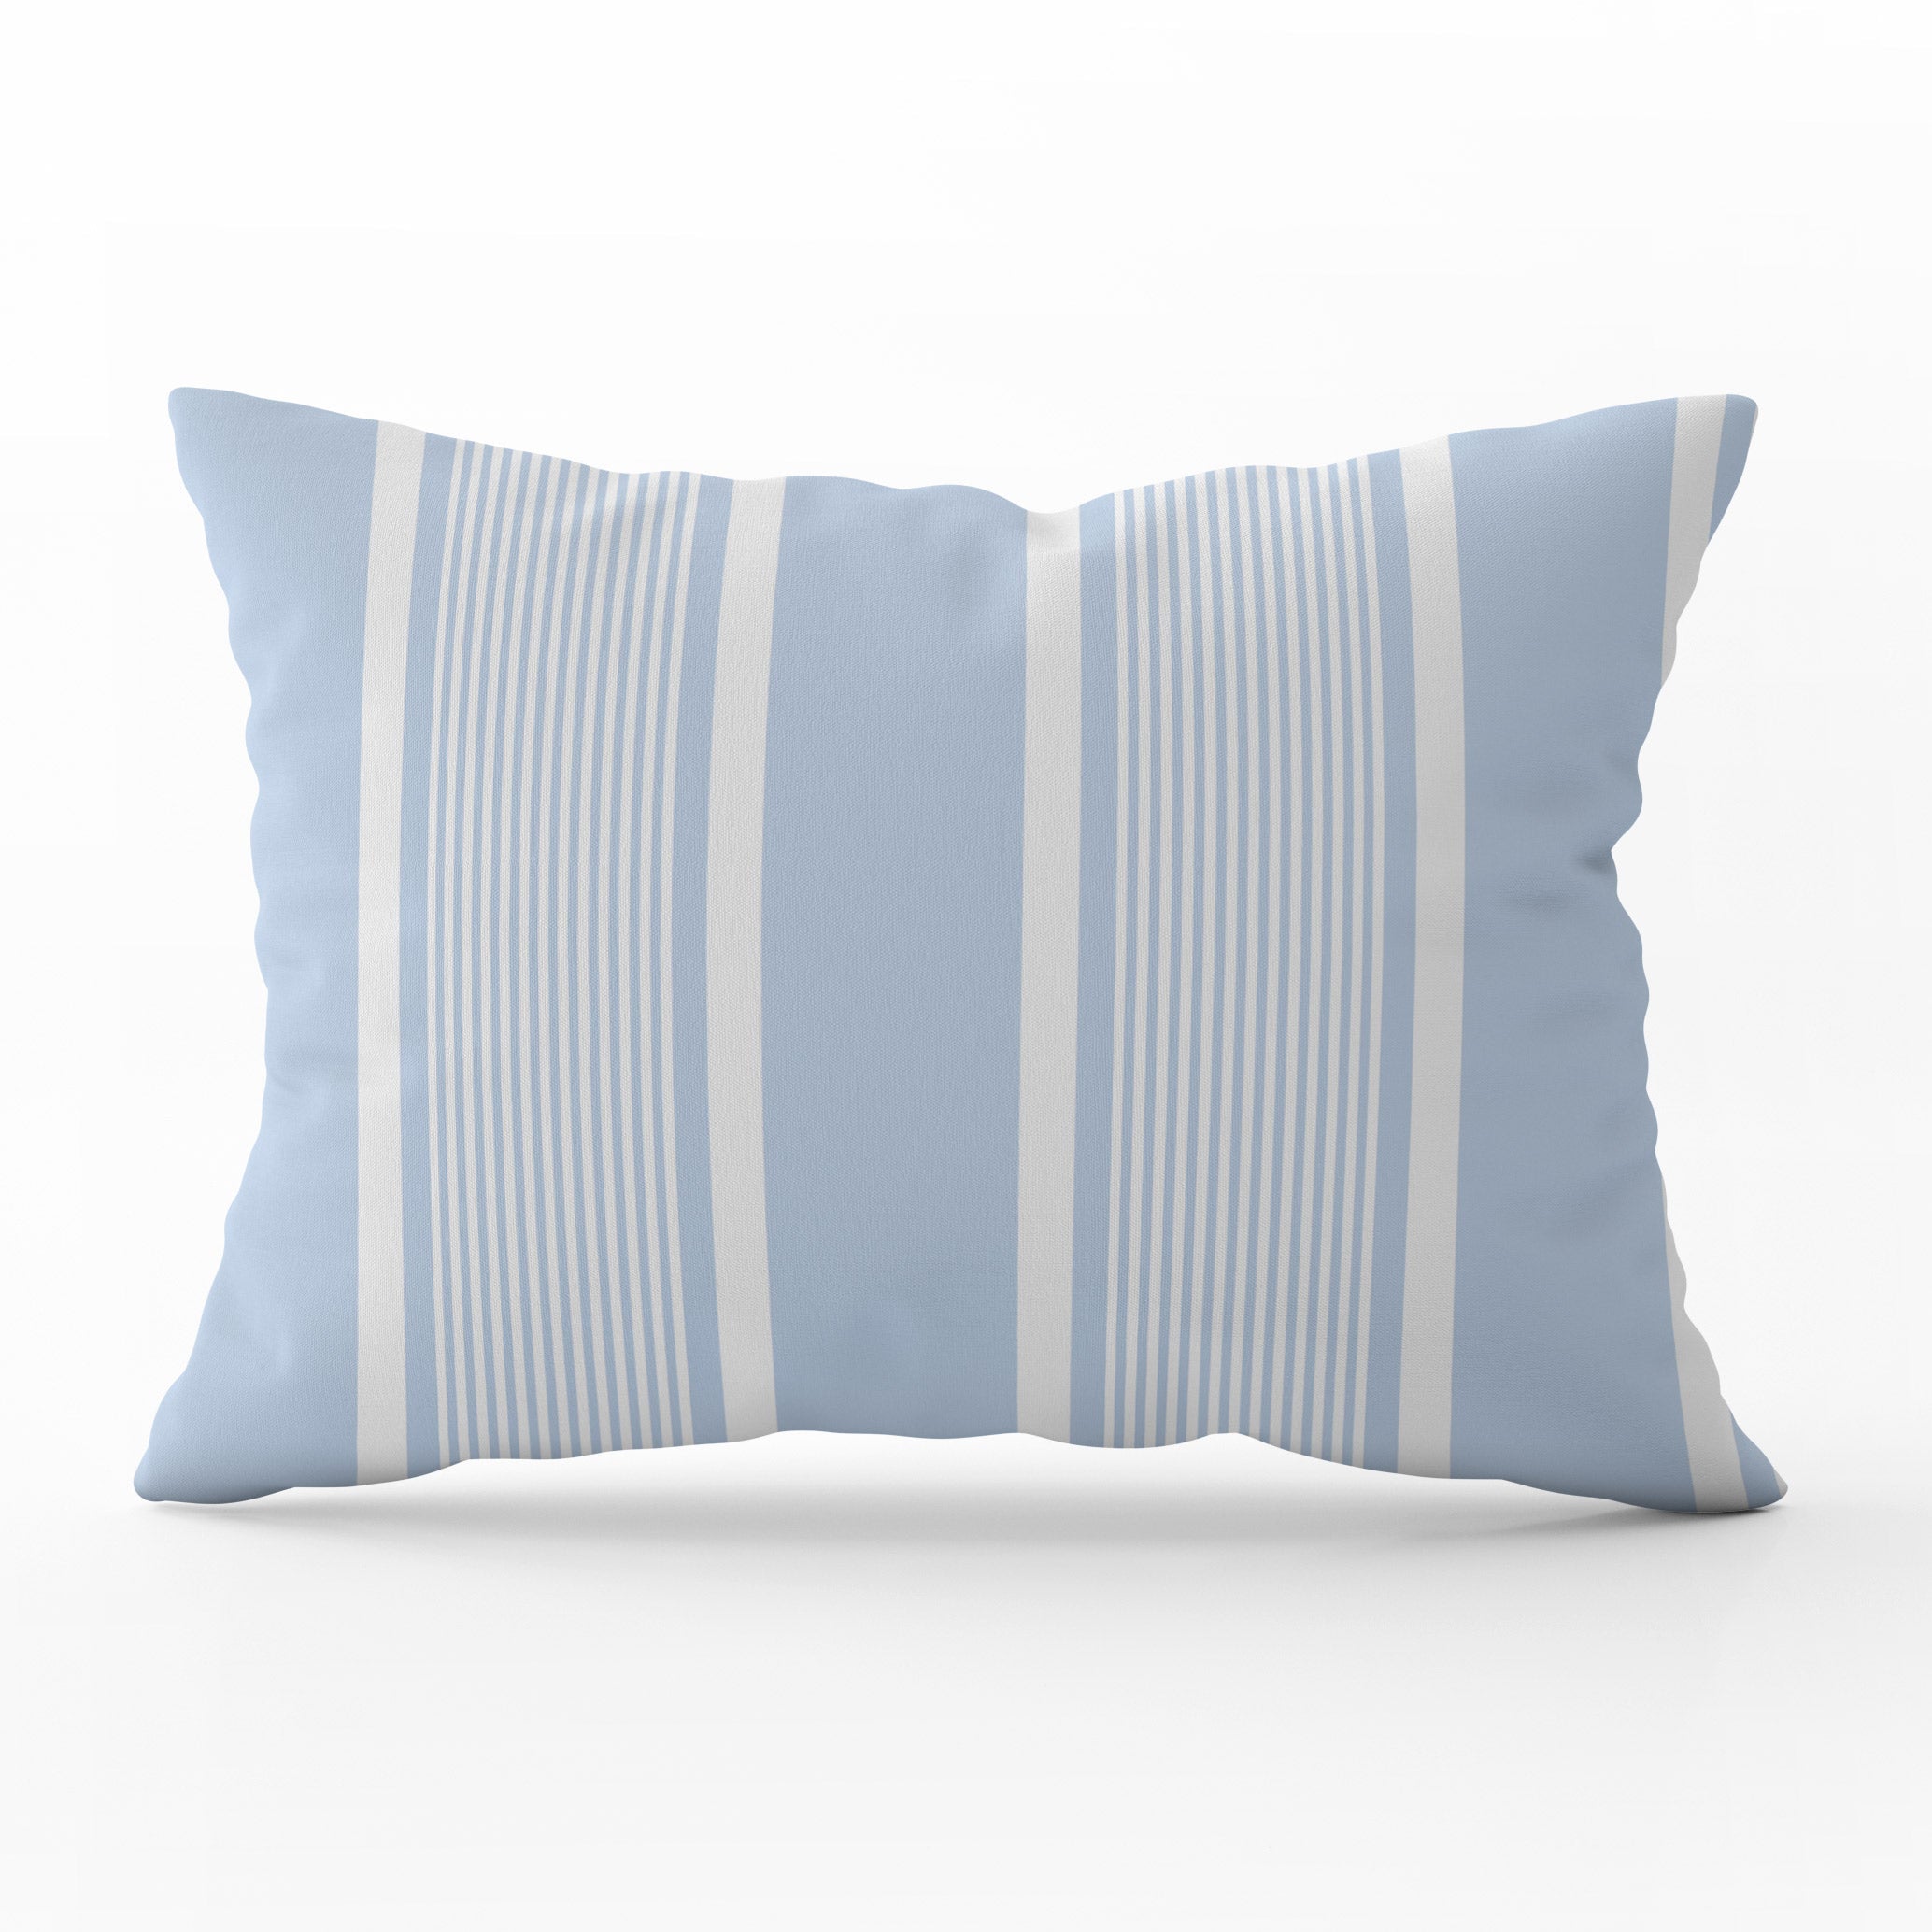 Deckchair Stripe Cushion - Blues - Hydrangea Lane Home